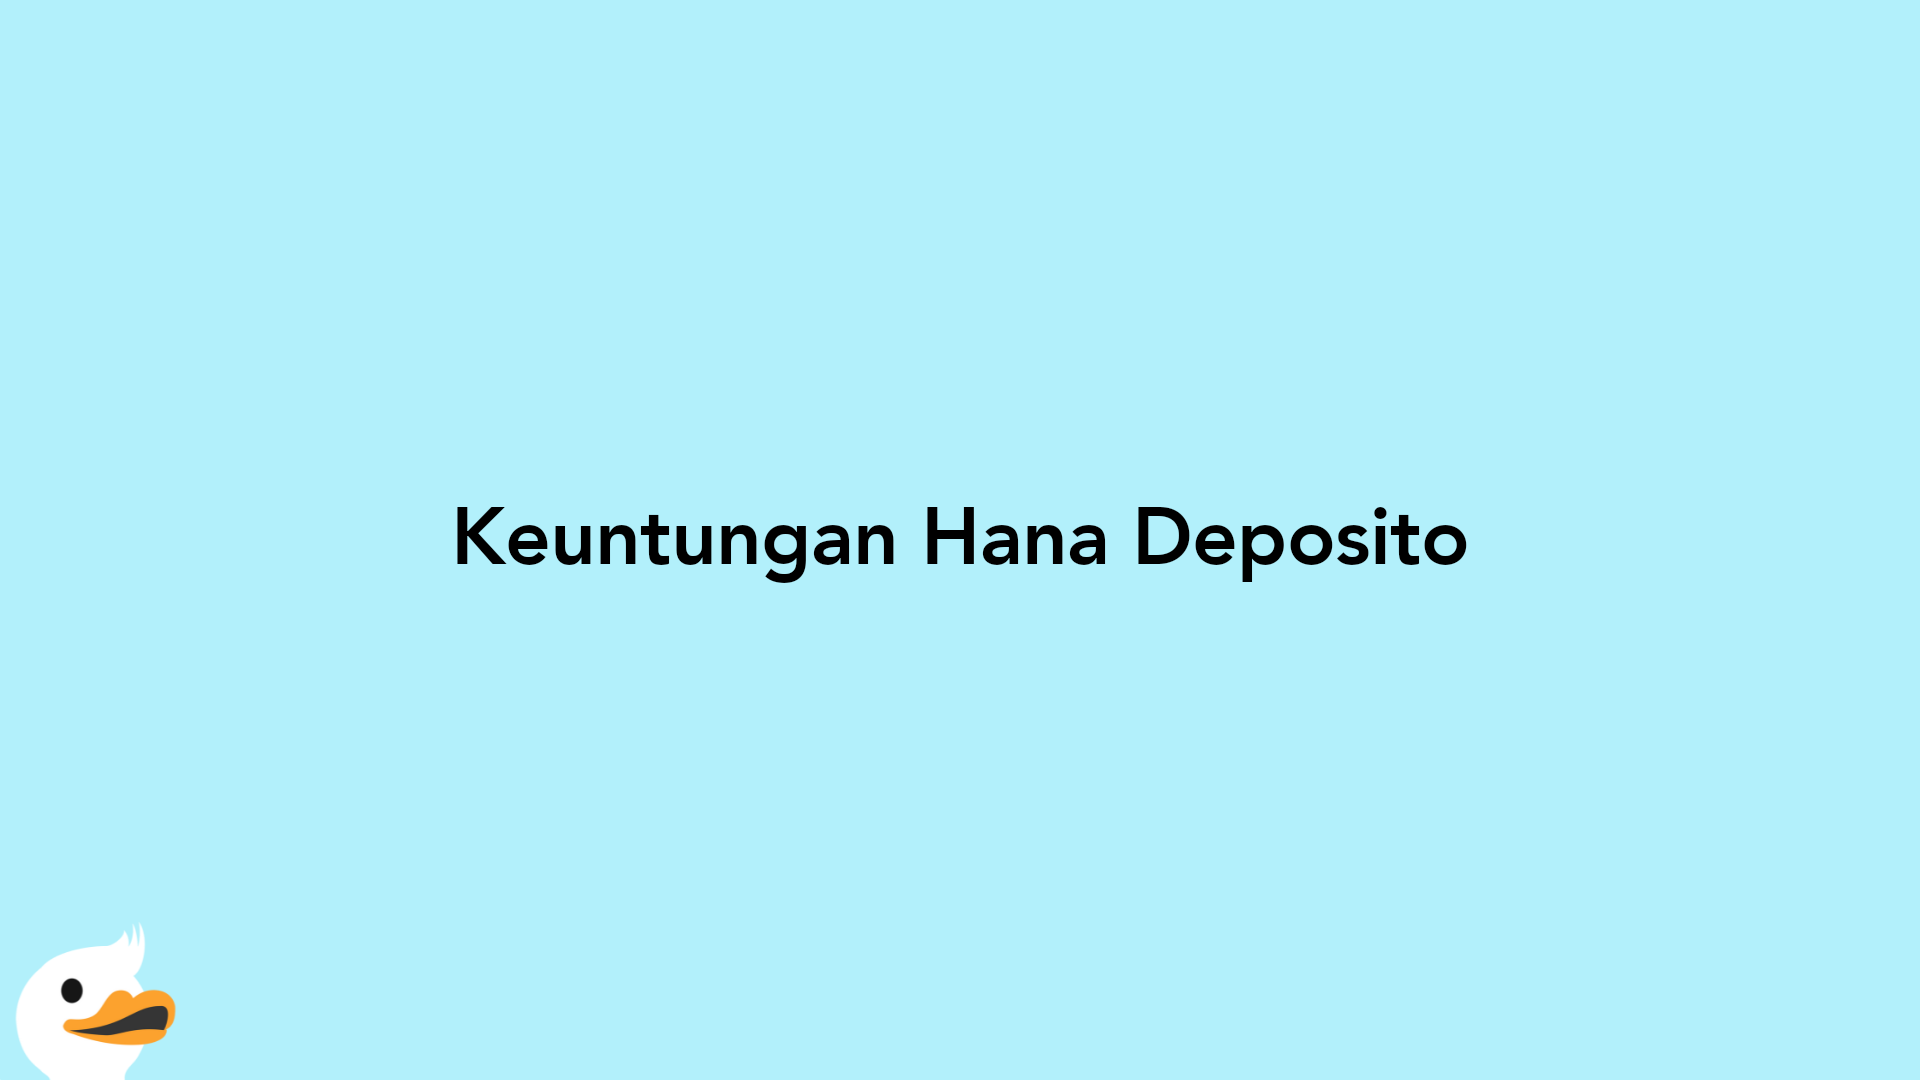 Keuntungan Hana Deposito